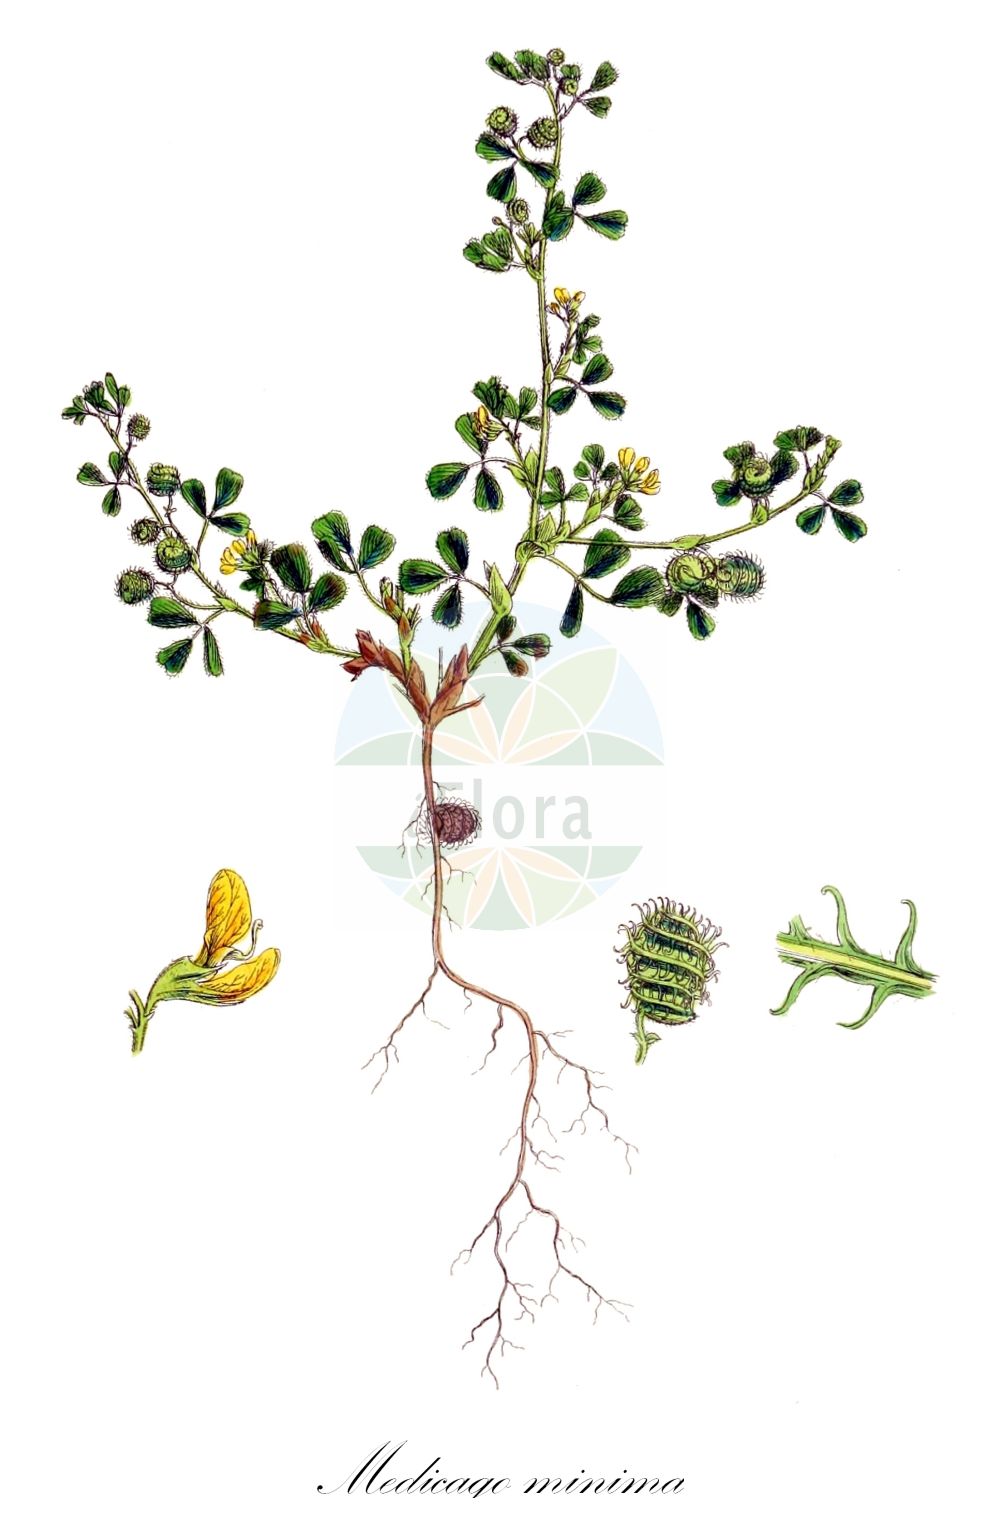 Historische Abbildung von Medicago minima (Zwerg-Schneckenklee - Bur Medick). Das Bild zeigt Blatt, Bluete, Frucht und Same. ---- Historical Drawing of Medicago minima (Zwerg-Schneckenklee - Bur Medick). The image is showing leaf, flower, fruit and seed.(Medicago minima,Zwerg-Schneckenklee,Bur Medick,Medicago hirsuta,Medicago minima,Medicago mollissima,Medicago ononidea,Medicago pulchella,Medicago recta,Zwerg-Schneckenklee,Bur Medick,Little Burclover,Small Medick,Medicago,Schneckenklee,Alfalfa,Fabaceae,Schmetterlingsblütler,Pea family,Blatt,Bluete,Frucht,Same,leaf,flower,fruit,seed,Sowerby (1790-1813))